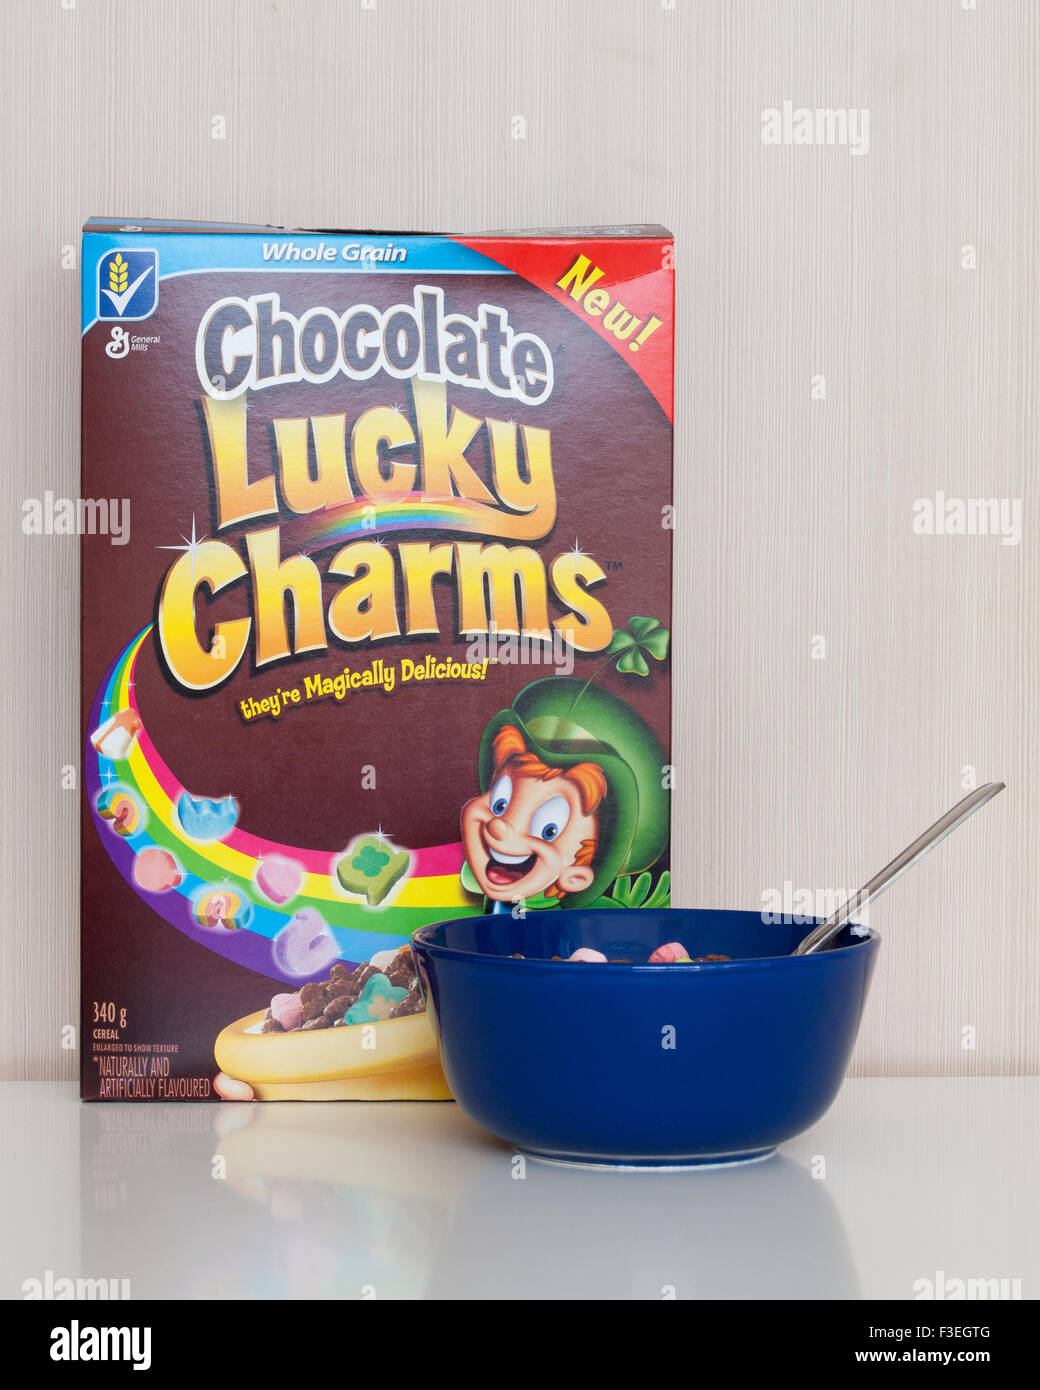 Un cuadro y el tazón de chocolate, cereales Lucky Charms fabricados por General Mills. Foto de stock